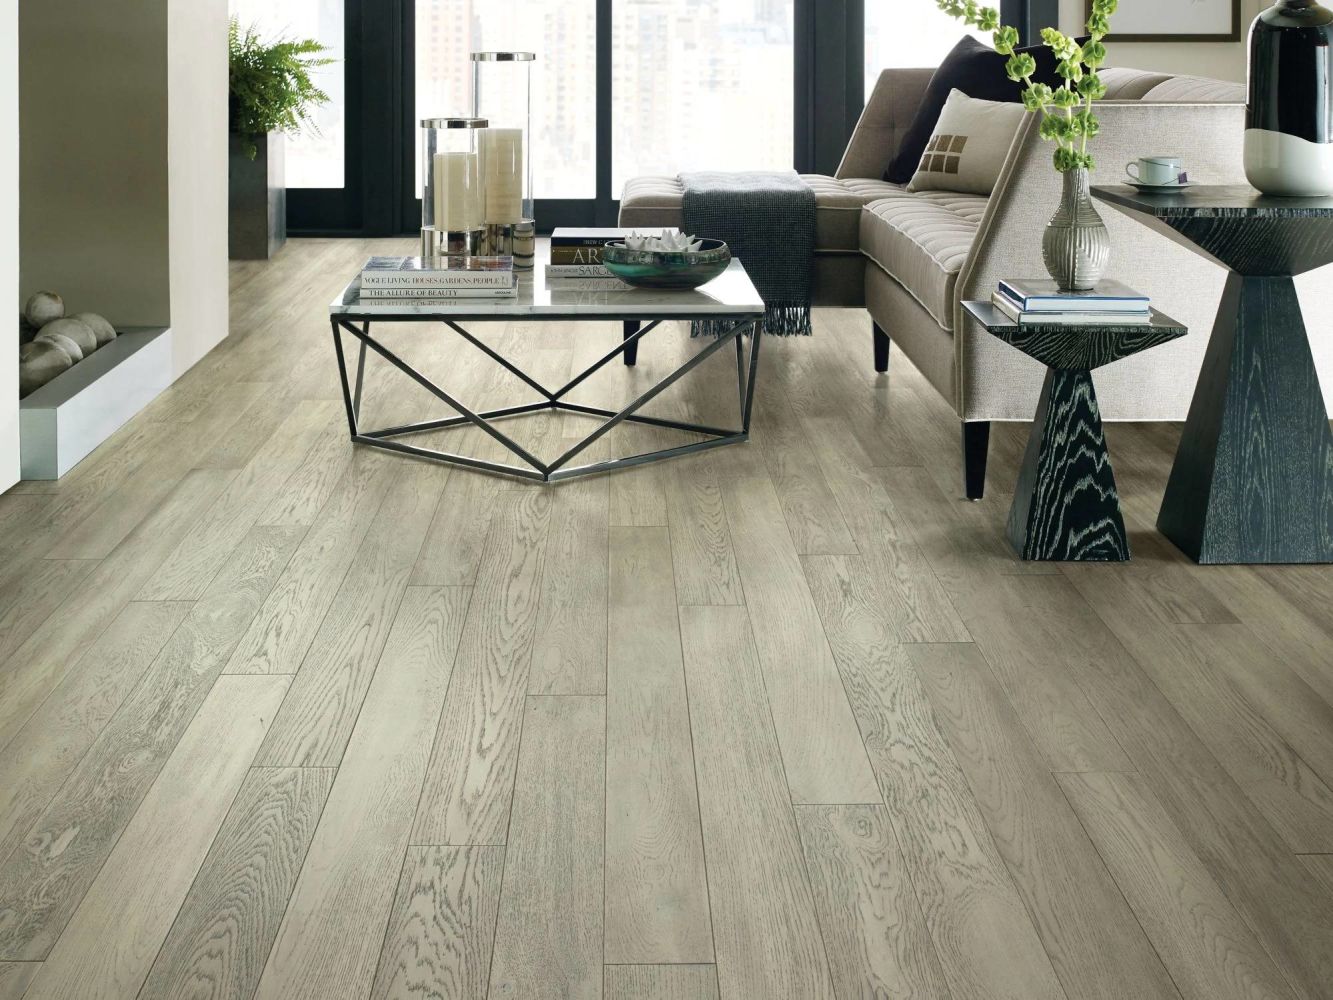 Shaw Floors Carpets Plus Hardwood Destination Anchor Oak Marble 01038_CH916